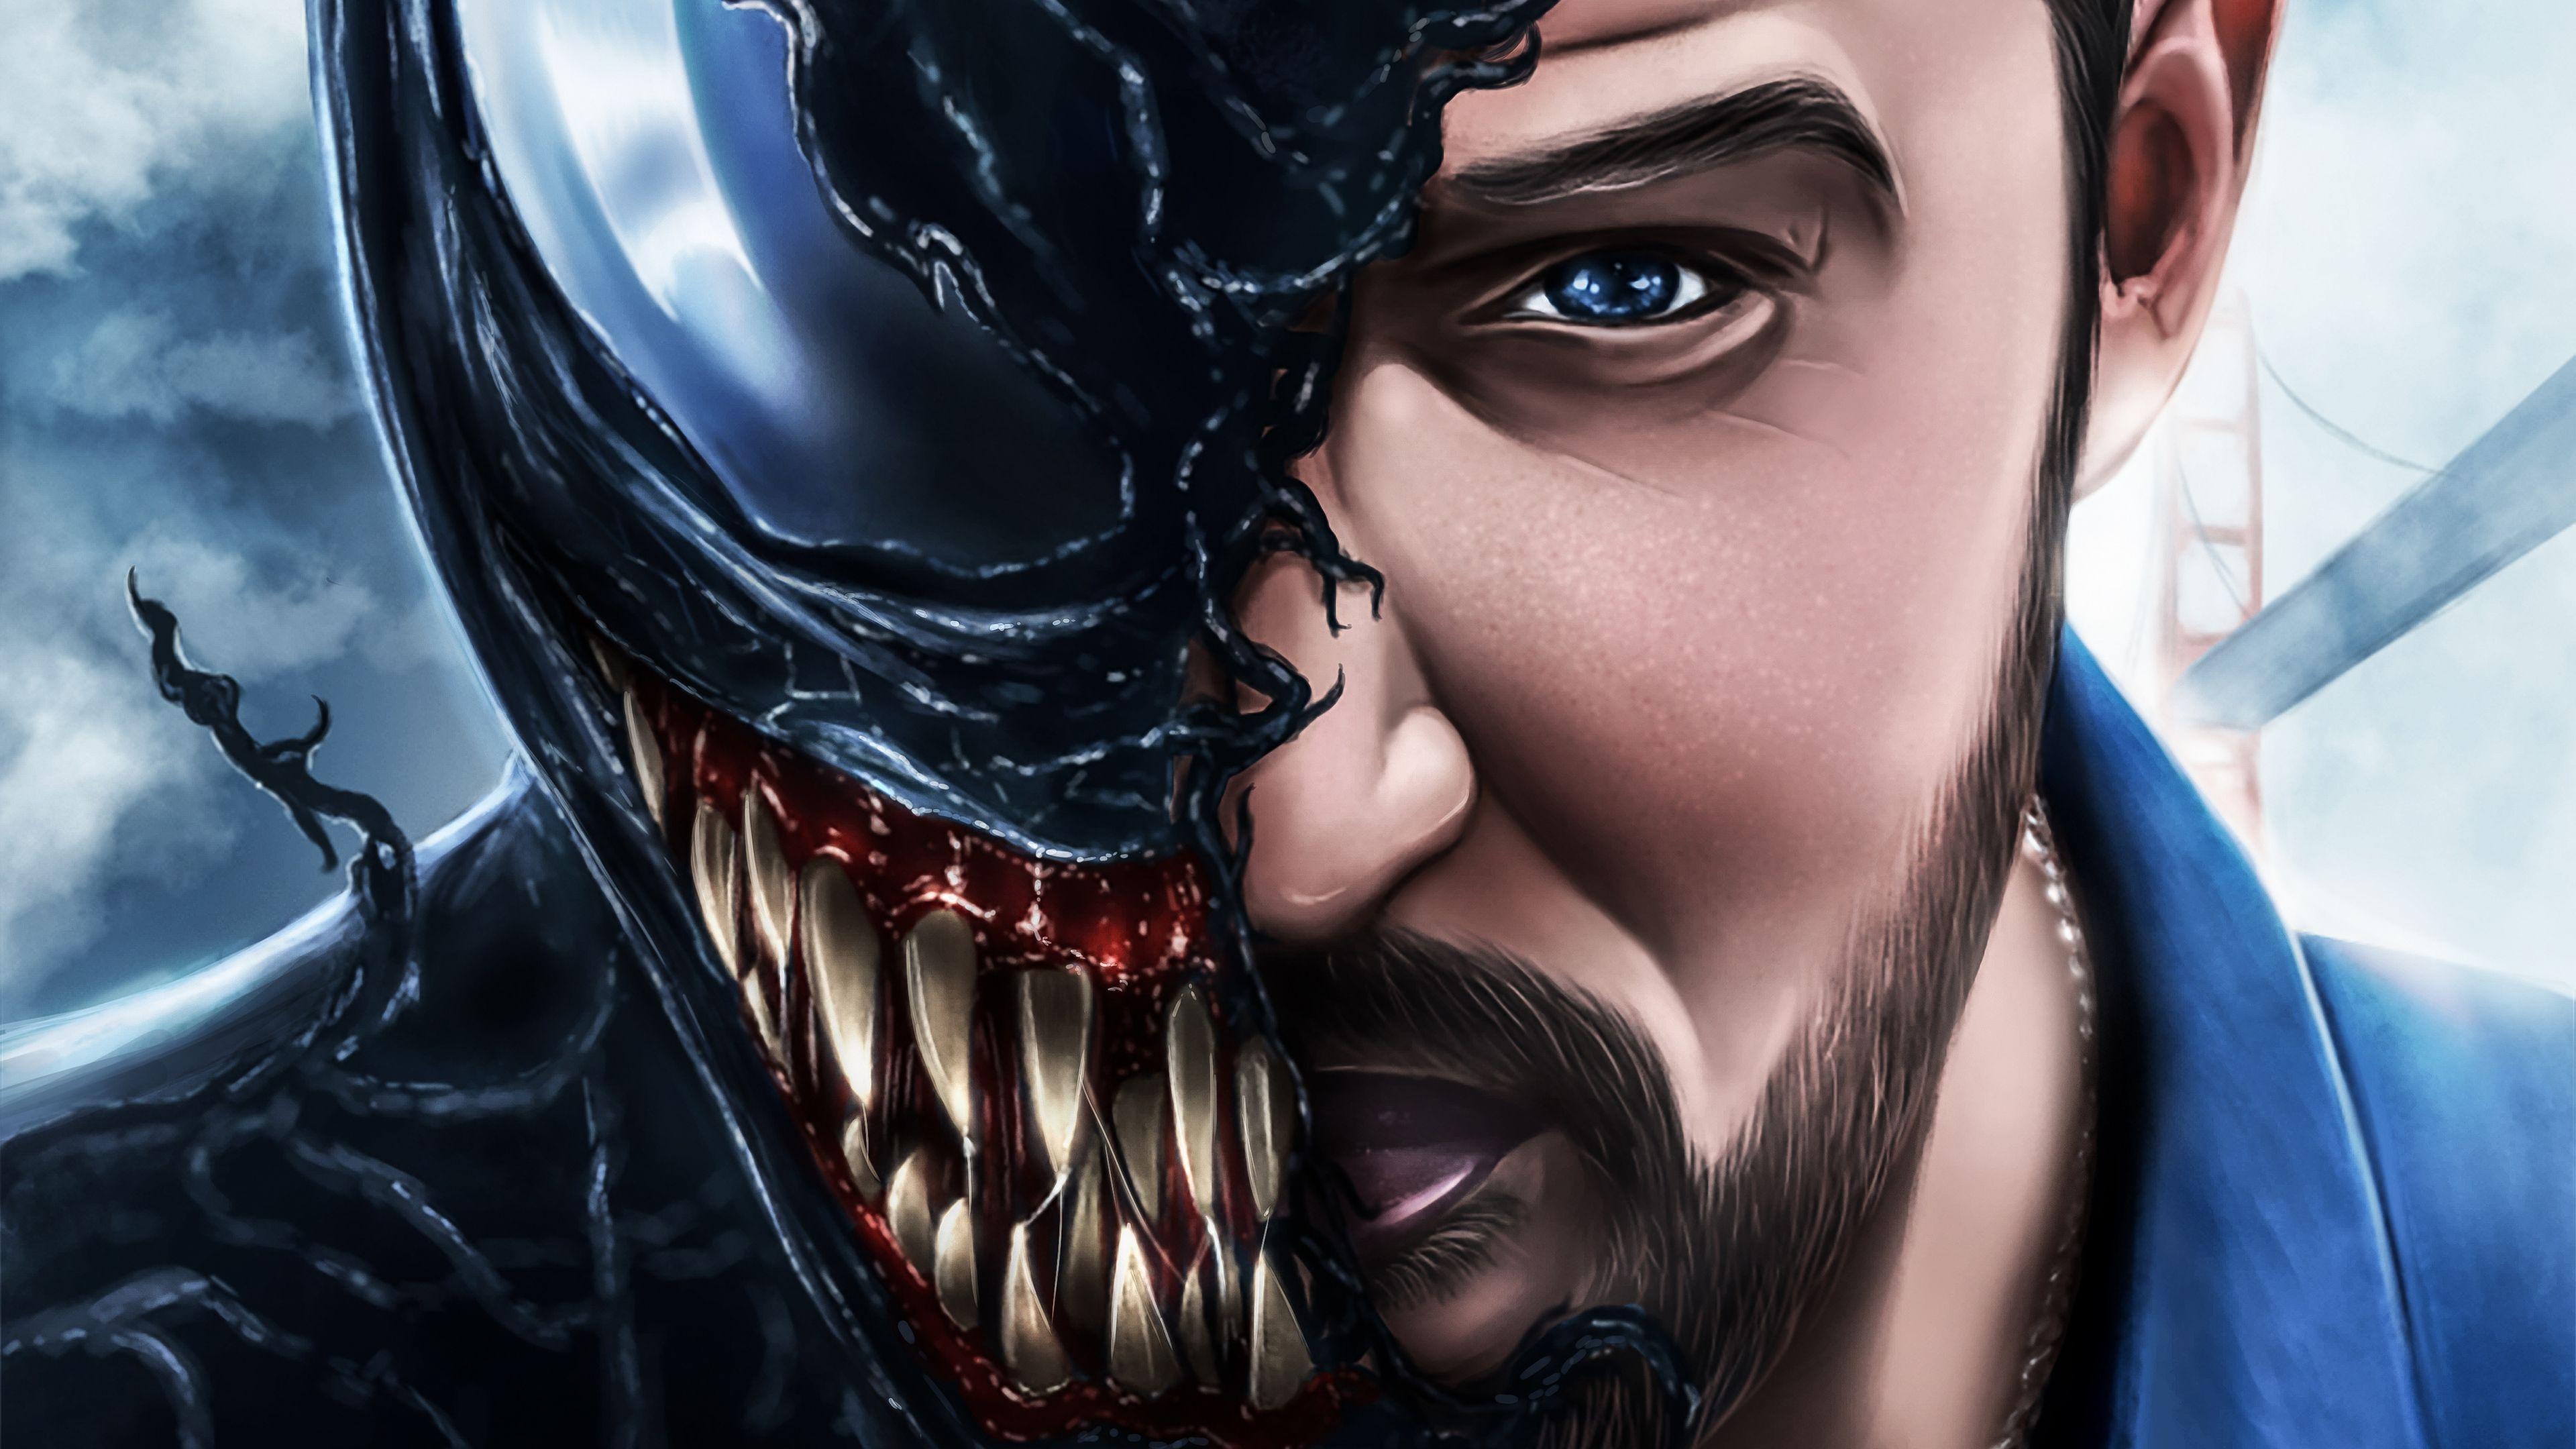 Venom download the new